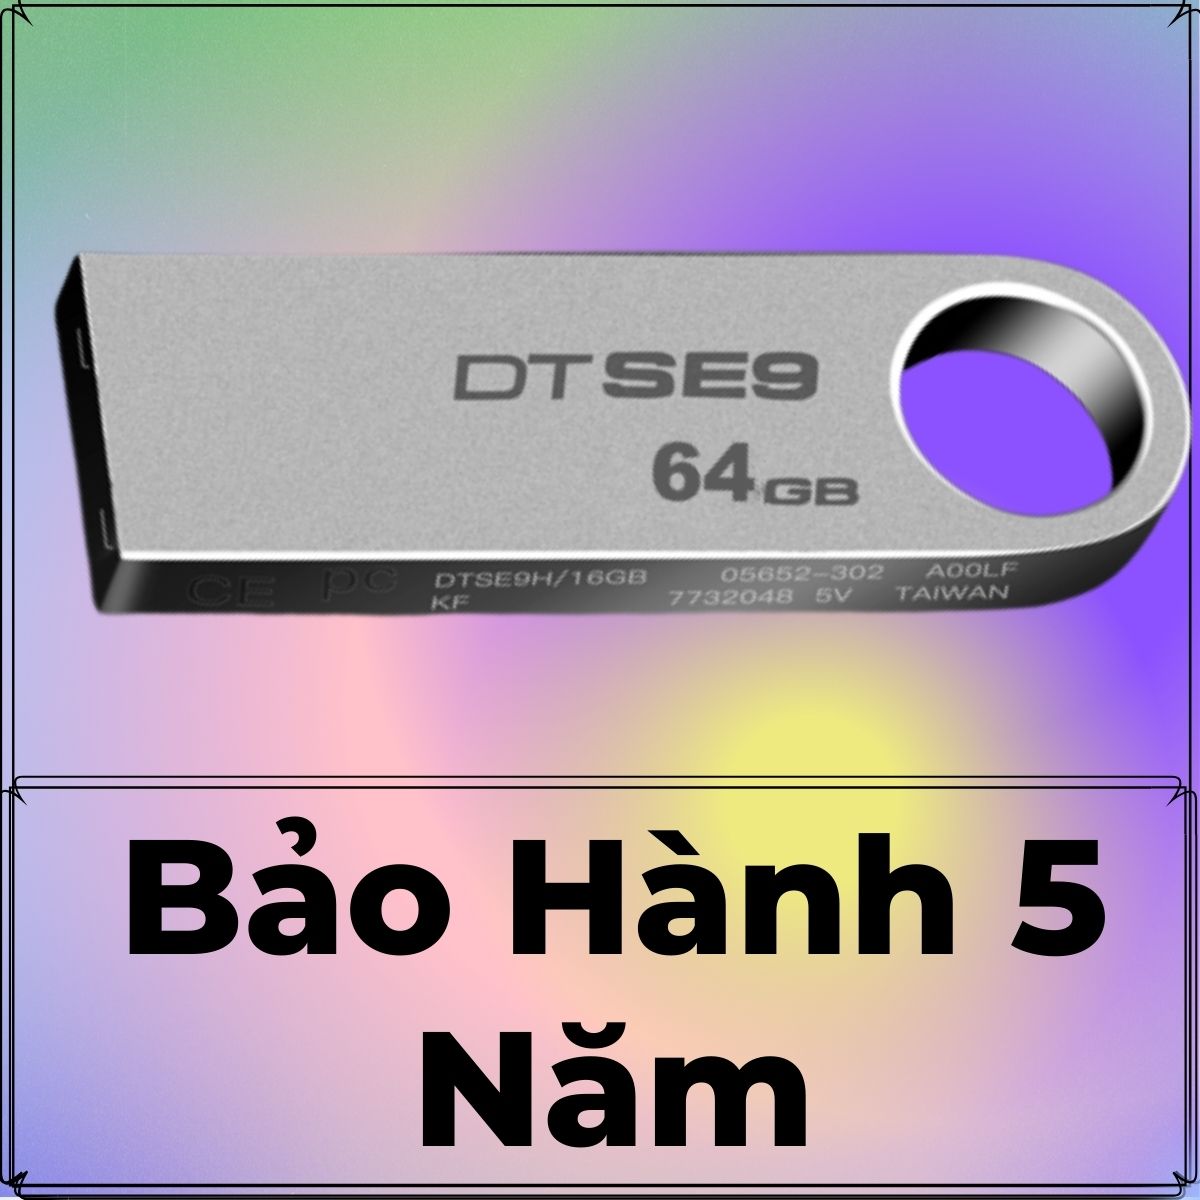 USB 64gb cao cấp TLT - Thiết kế nhỏ gọn, vỏ kim loại, chống nước, kết hợp công nghệ truyền tải siêu tốc